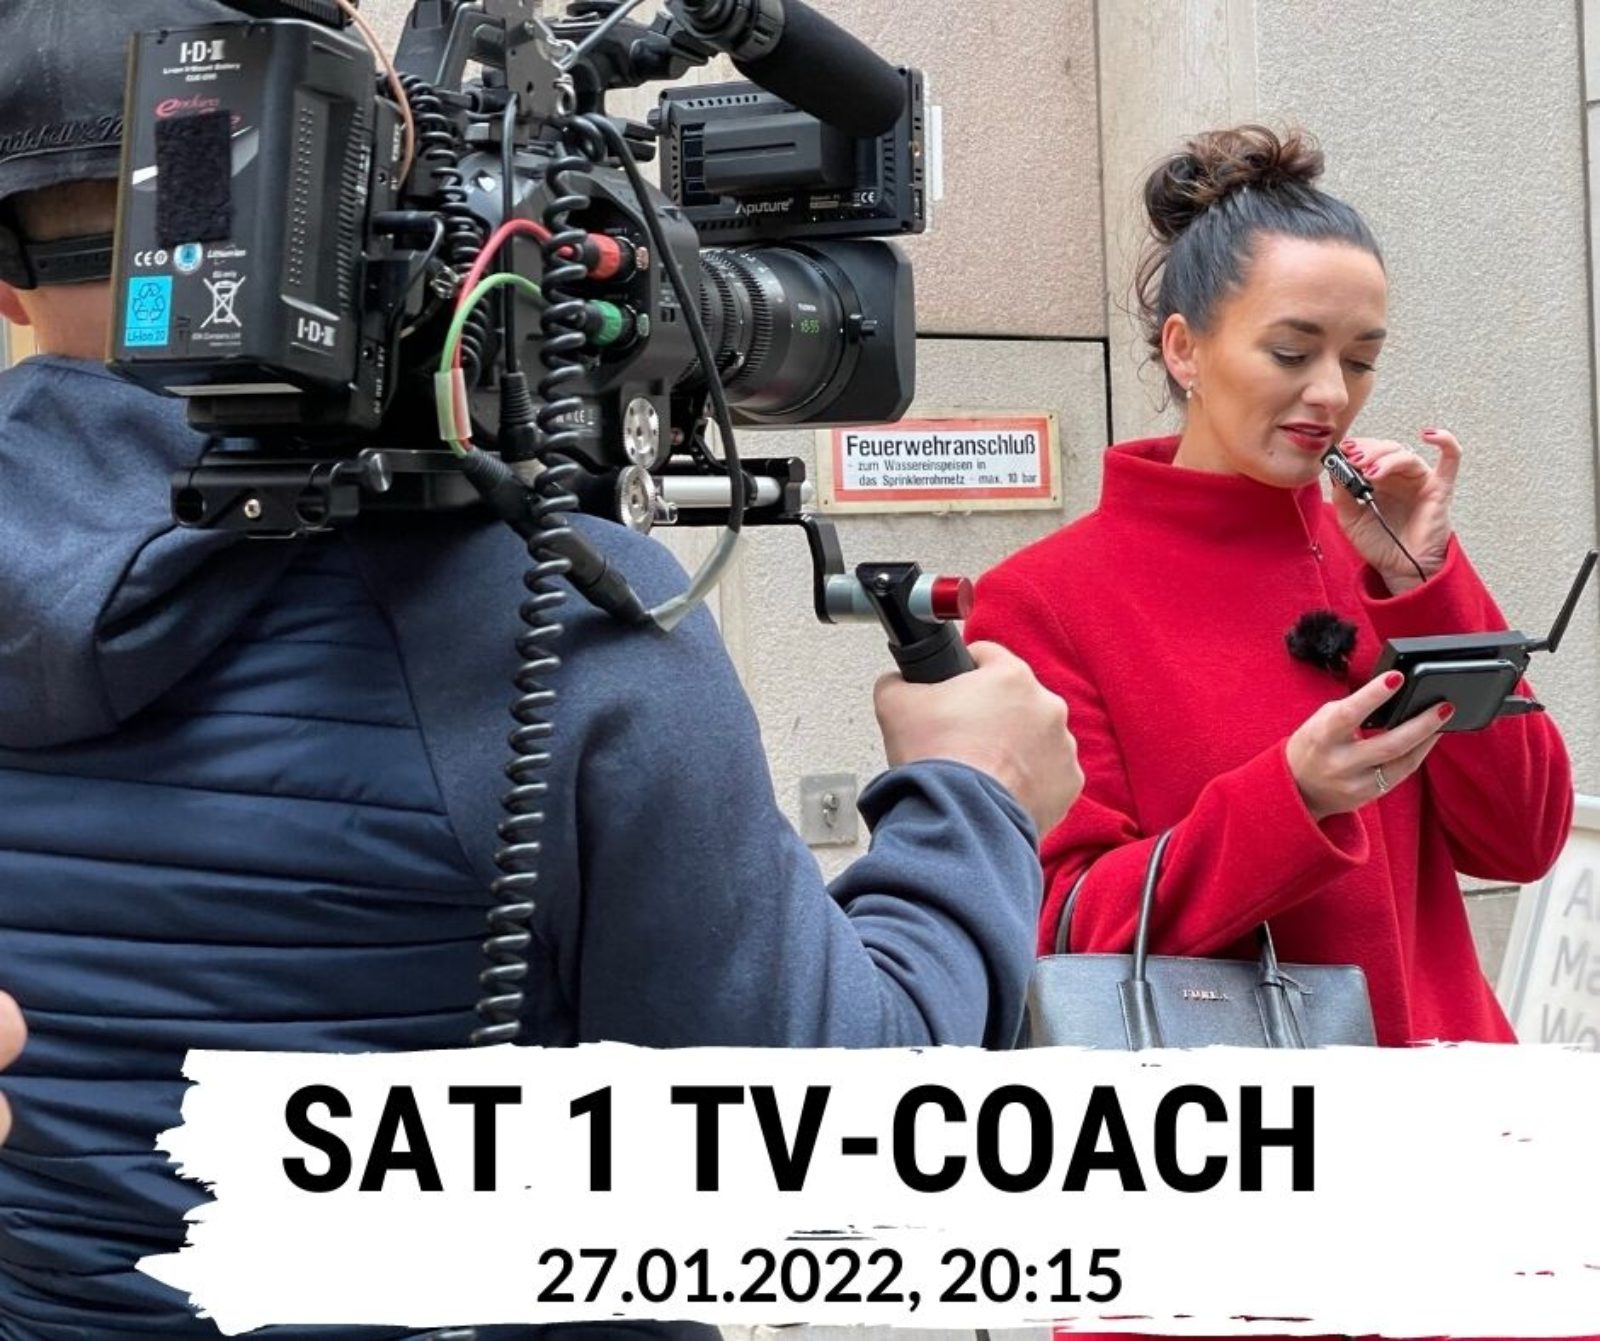 Preisverhandlung“ im TV! Kommunikationstrainerin Silvia coacht für SAT 1